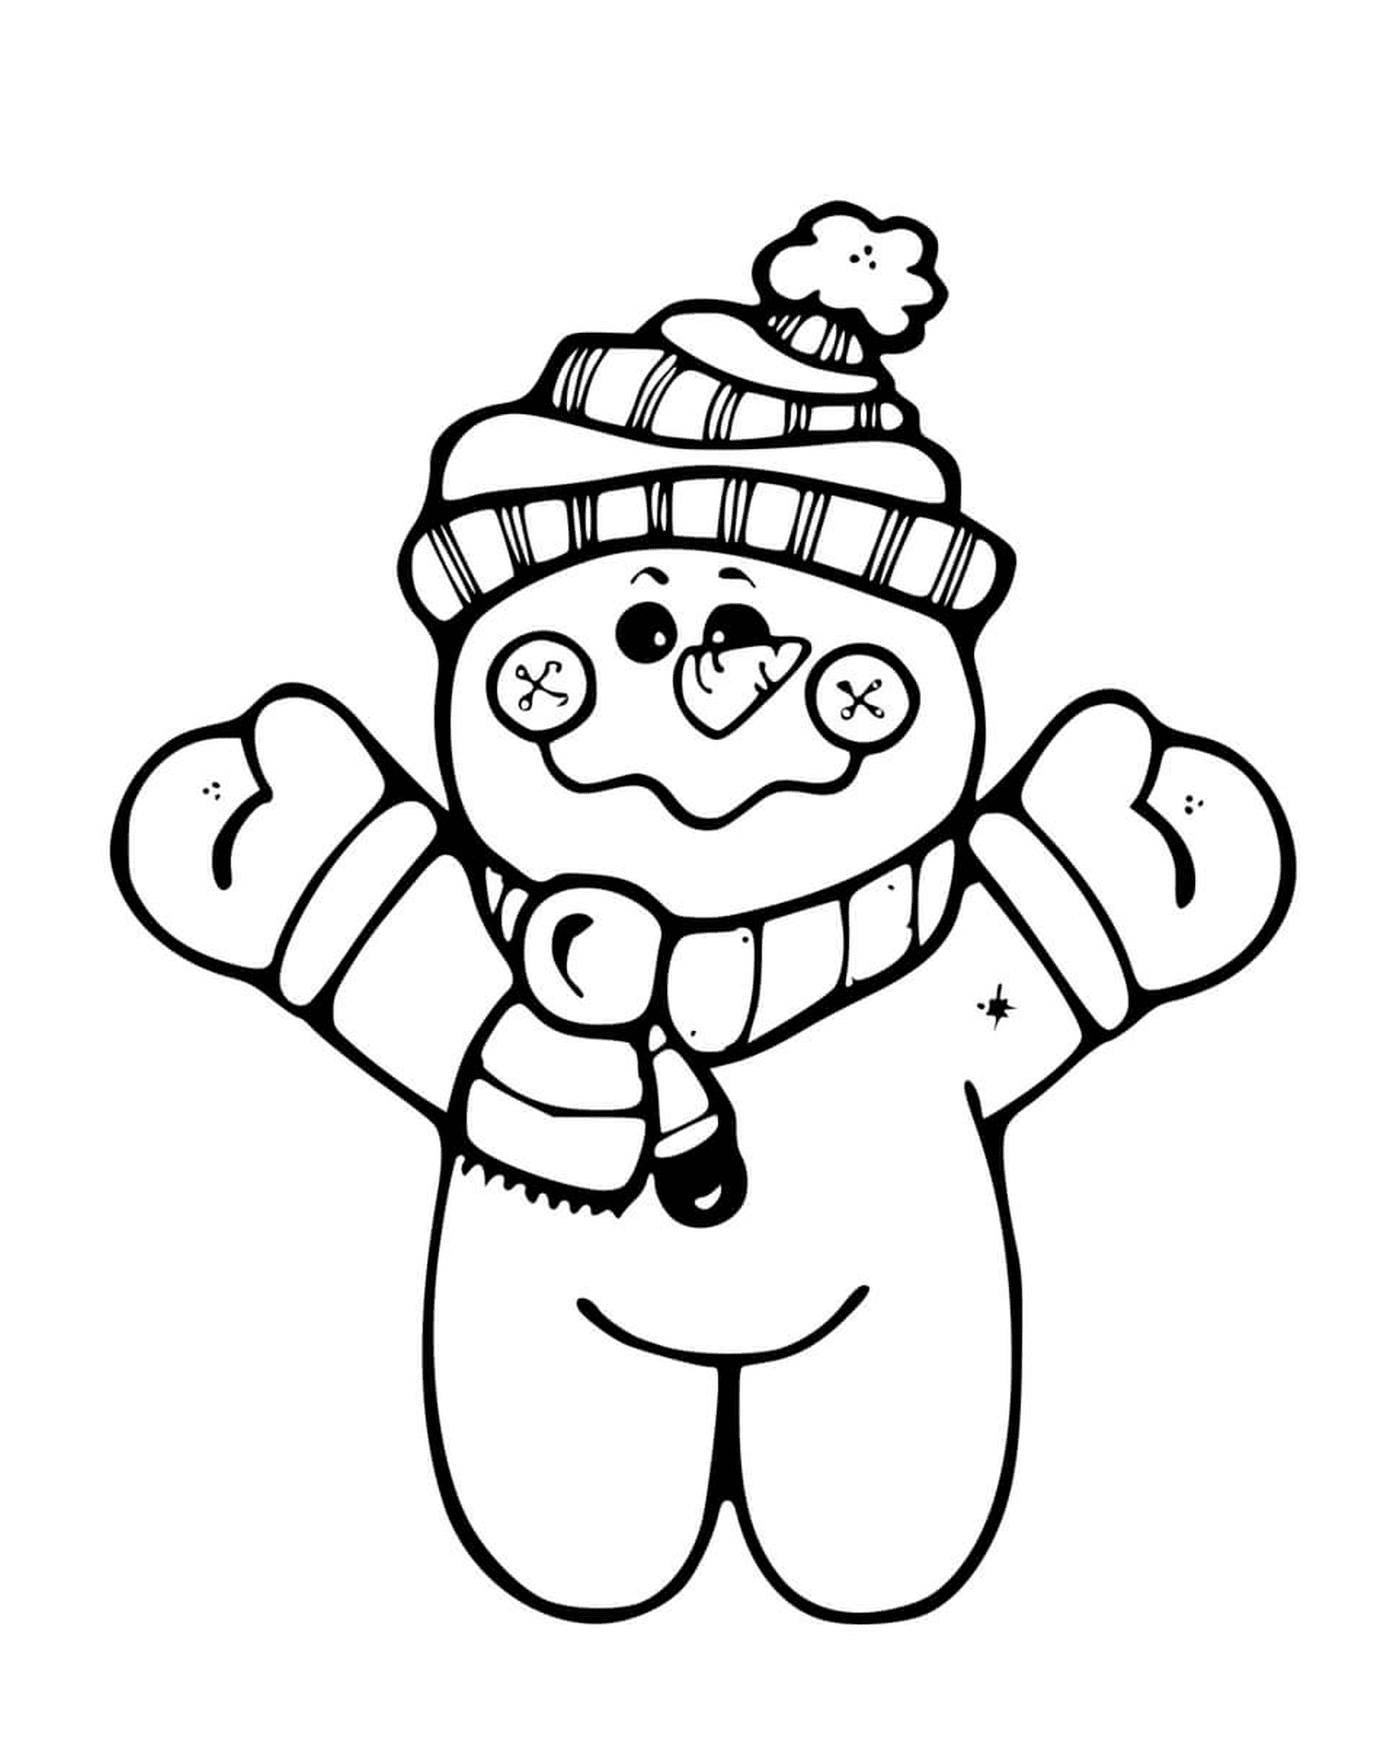  Piccolo pupazzo di neve in piedi, indossando una tuque e una sciarpa 